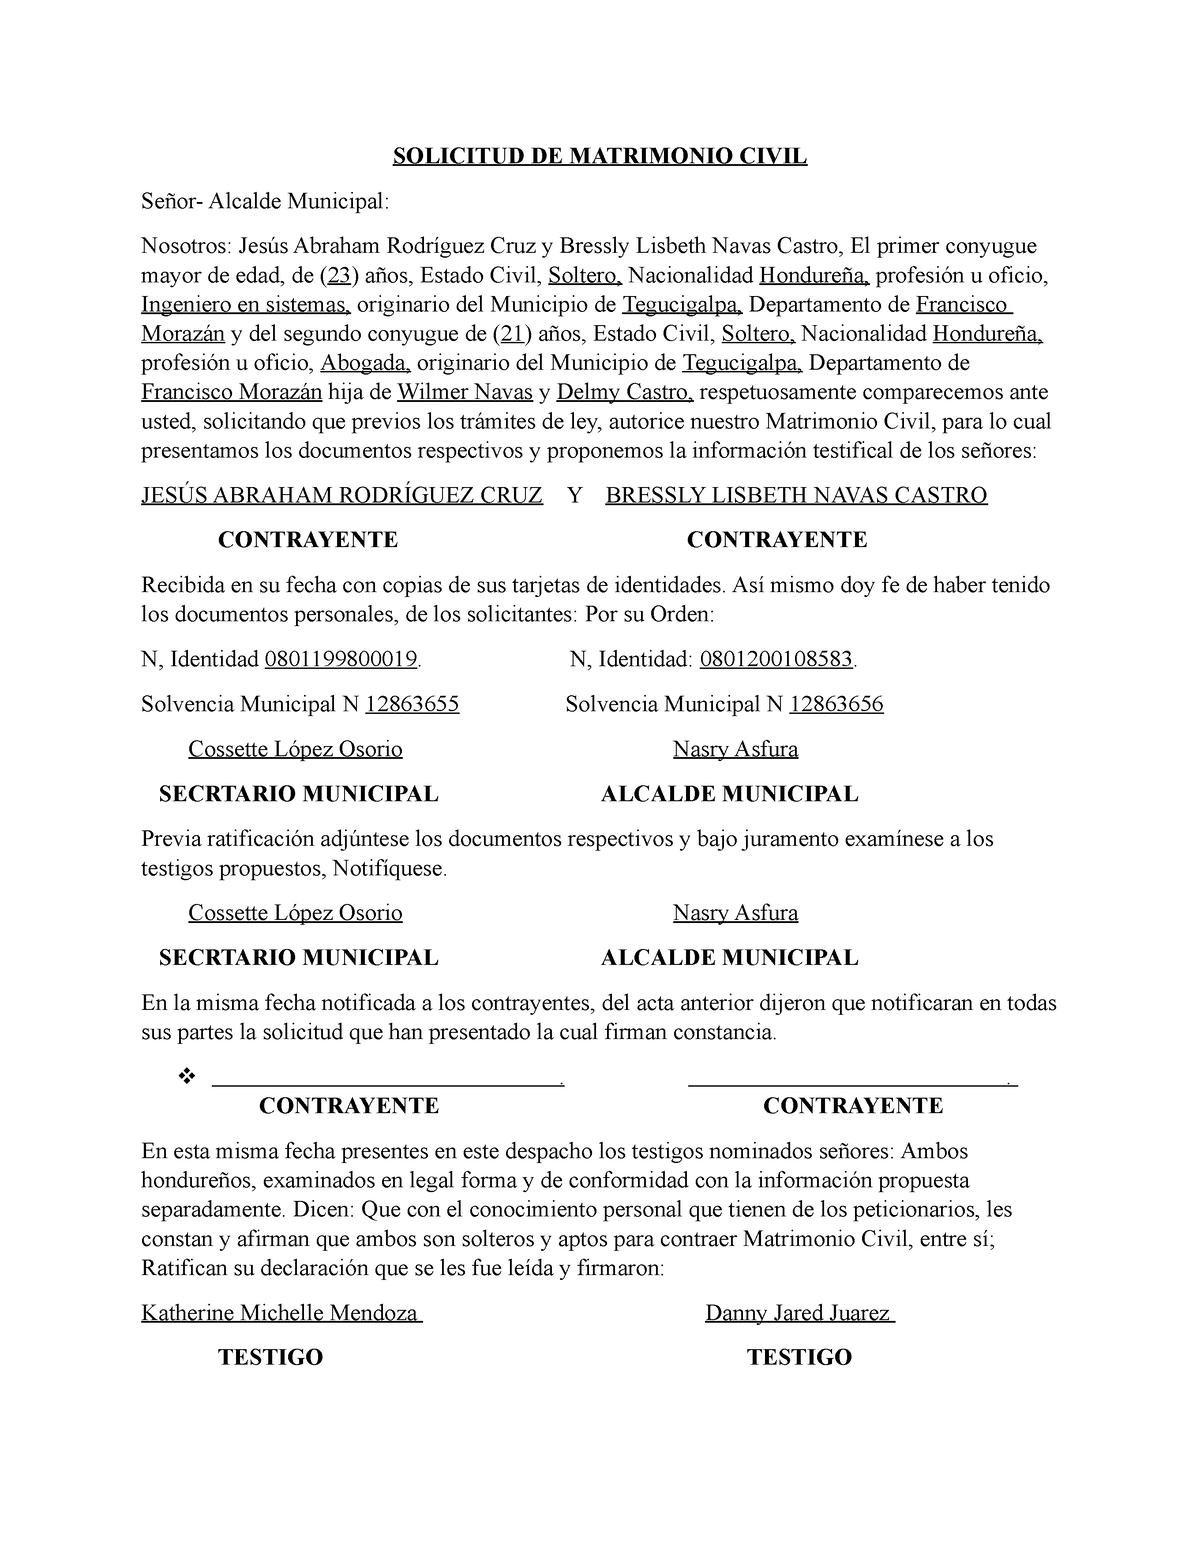 Formato Solicitud DE Matrimonio Civil - SOLICITUD DE MATRIMONIO CIVIL  Señor- Alcalde Municipal: - Studocu